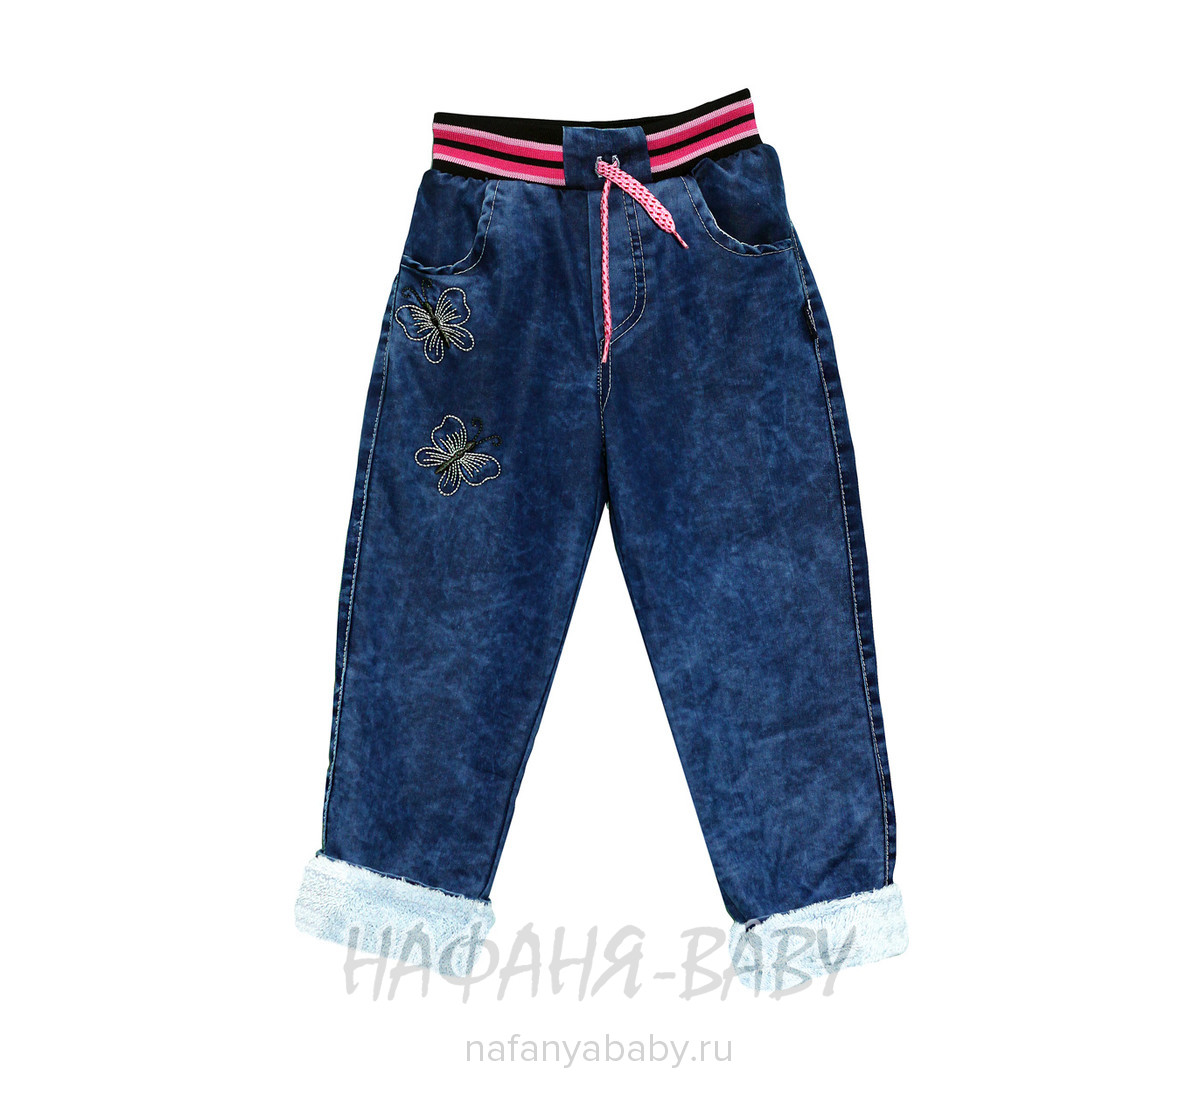 Детские джинсы AKIRA, купить в интернет магазине Нафаня. арт: 2044.